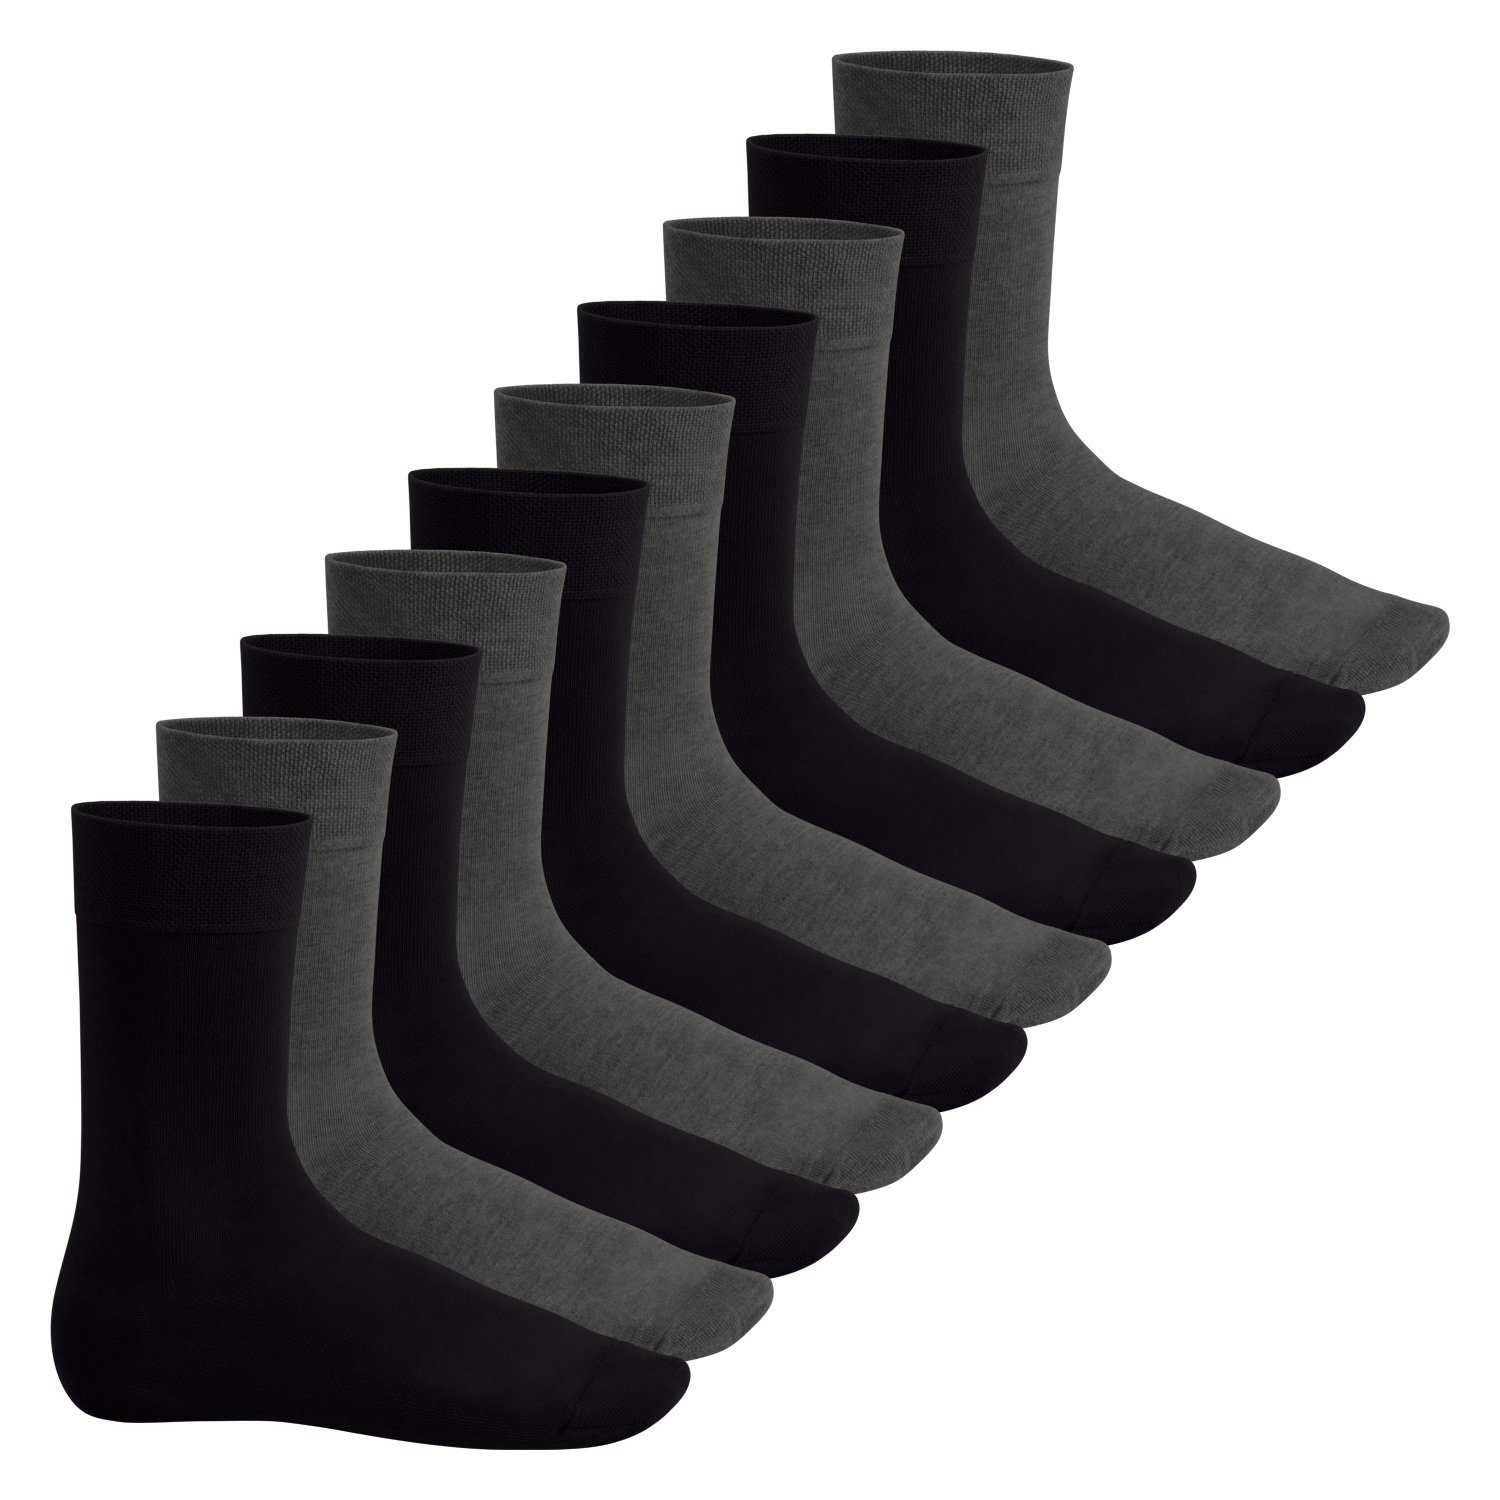 Footstar Basicsocken Everyday! Herren & Damen Socken (10 Paar) mit Baumwolle Anthra-Schwarz | Socken